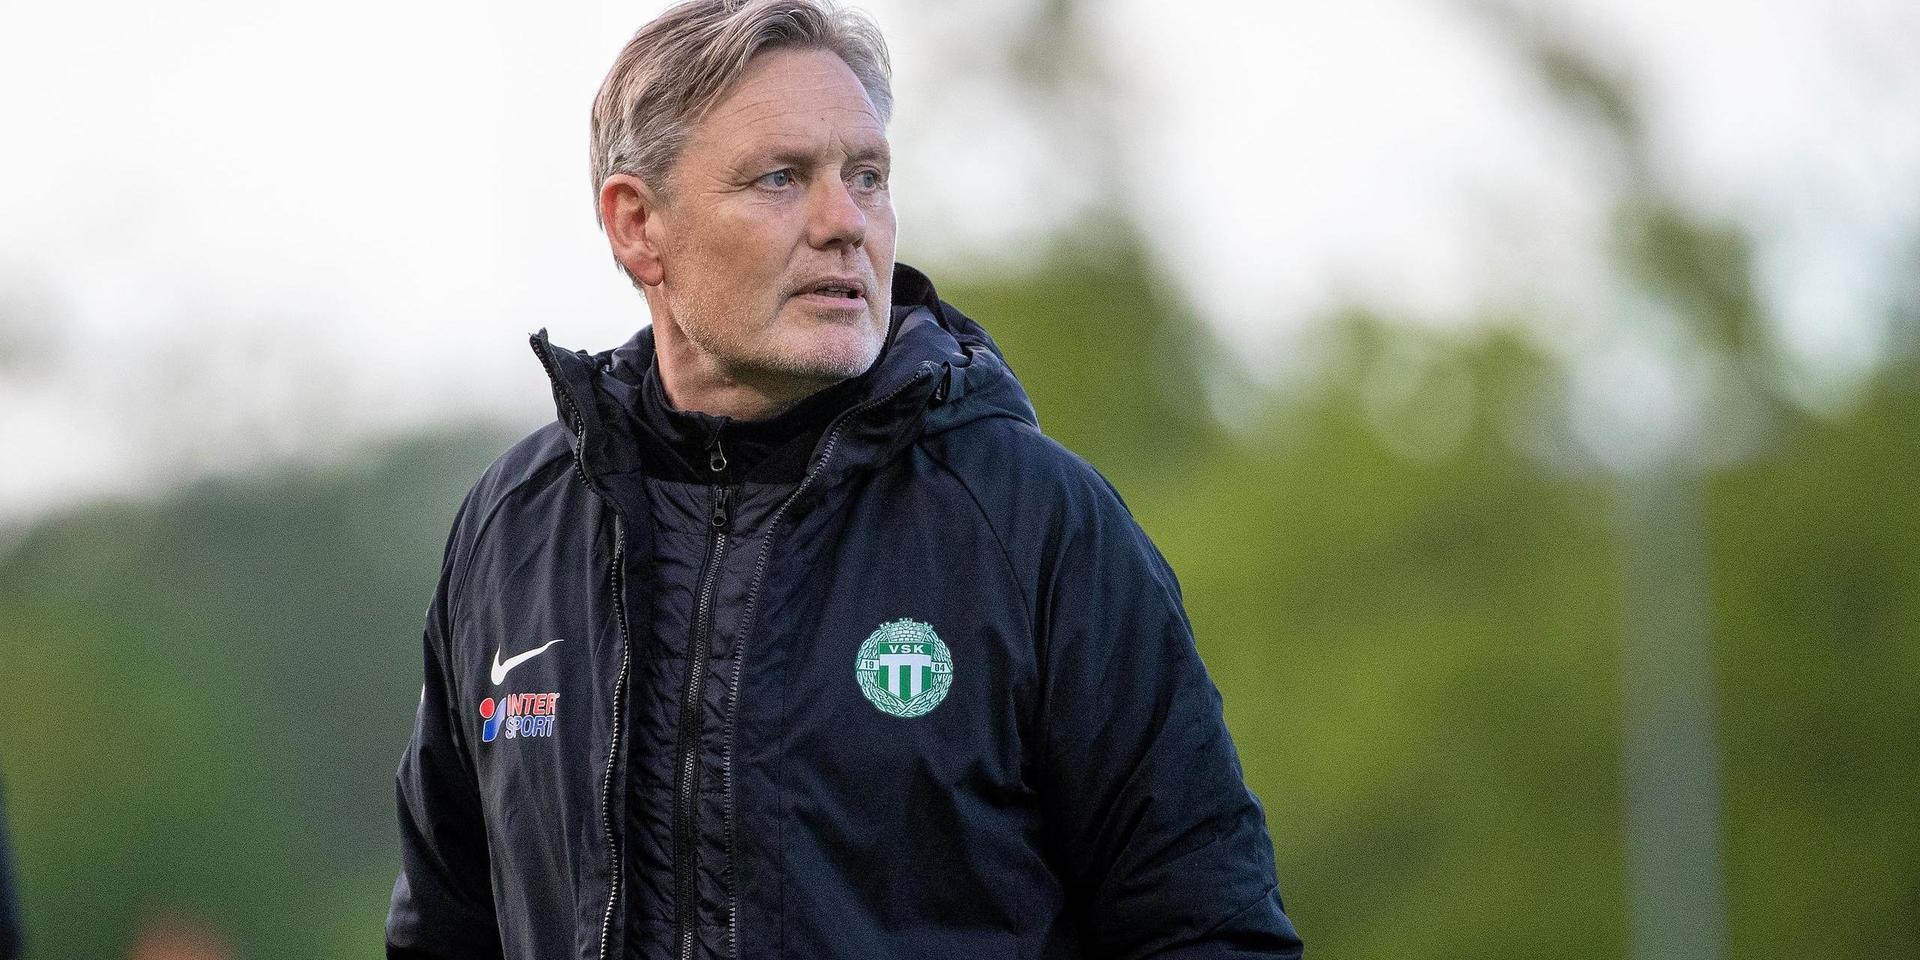 Thomas Askebrand har lämnat Västerås. Nu hoppas Åsabon på en ny roll inom fotbollen. Kanske som sportchef?